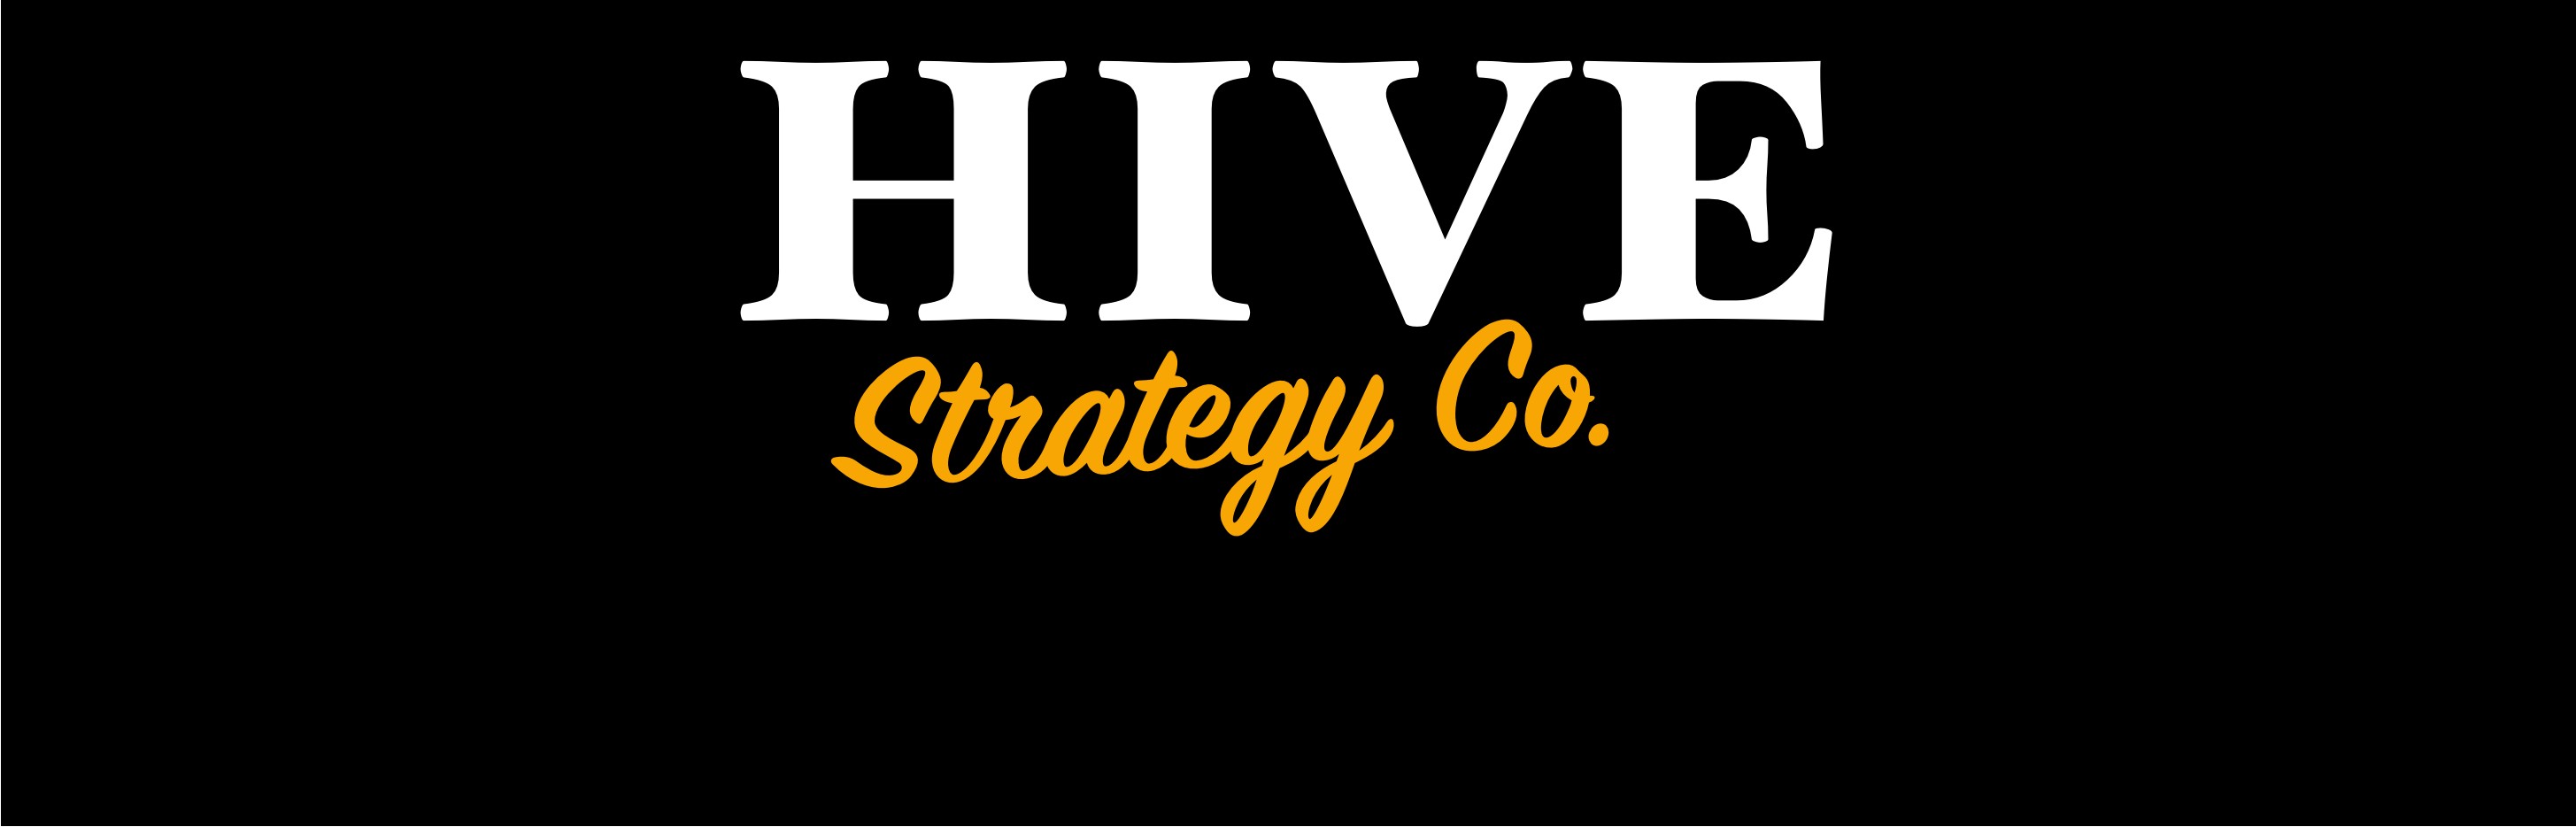 Hive Strategy Co Linkedin